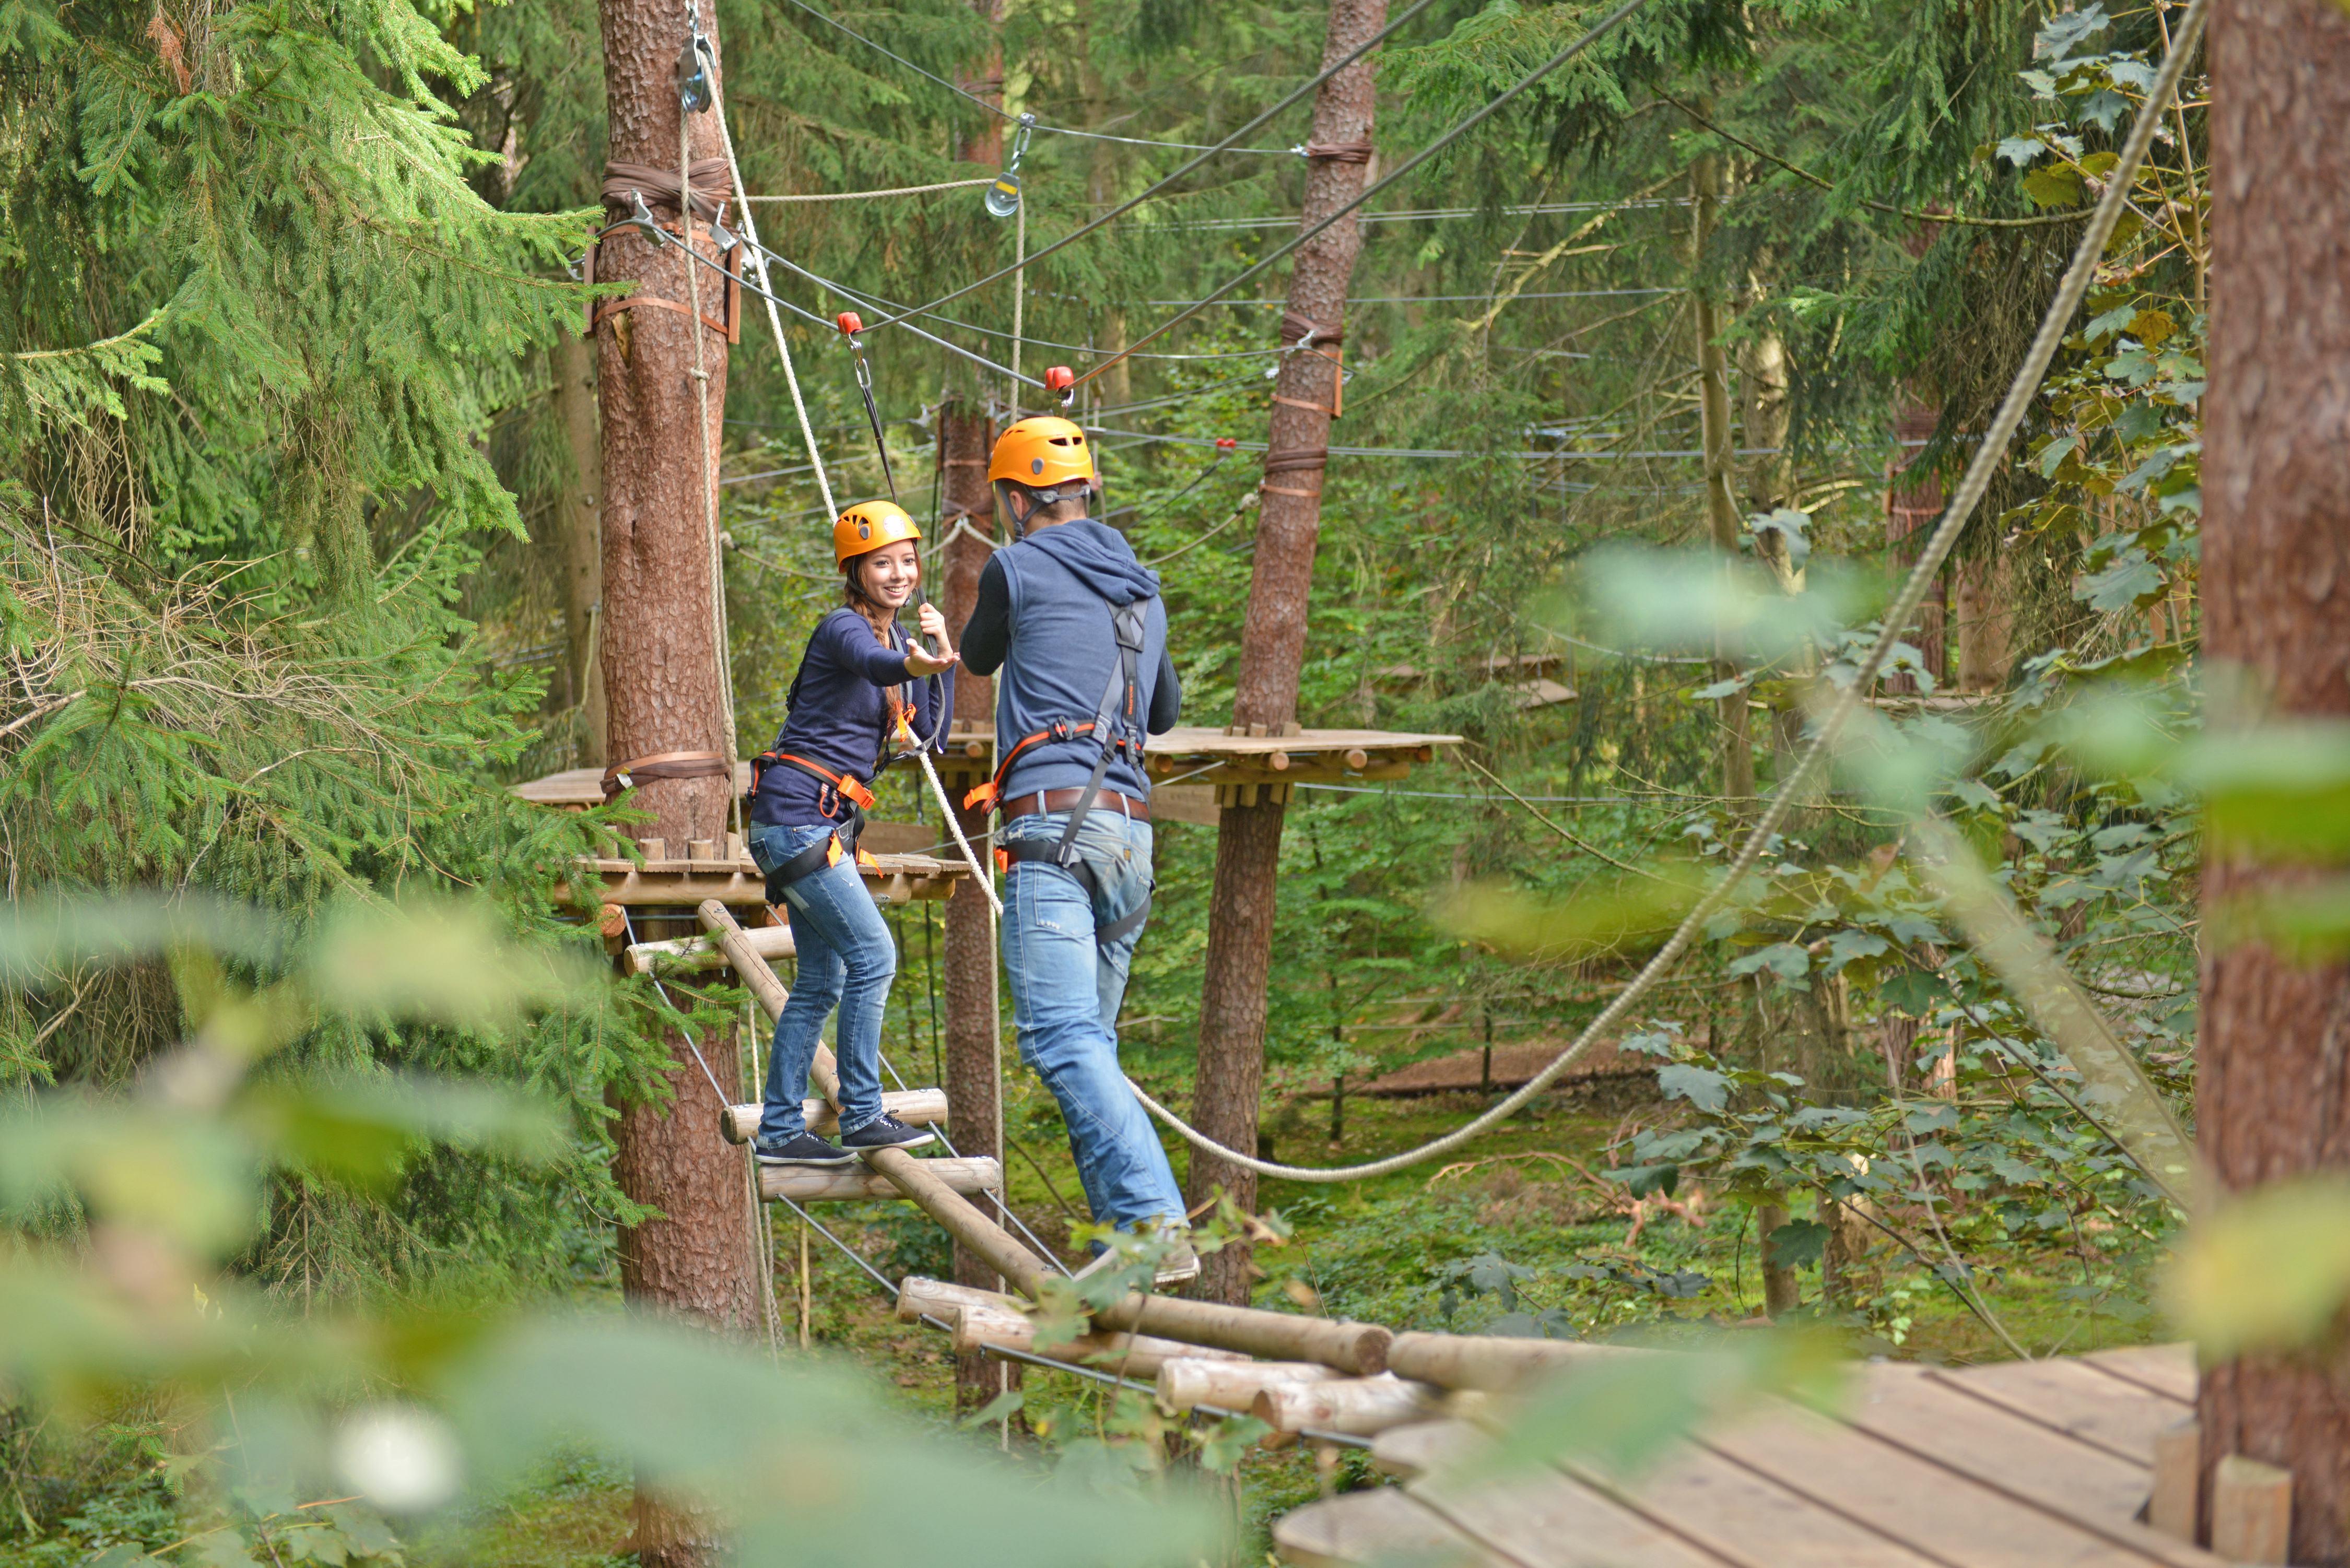 Gutschein für 2 Personen für den Münchner Wald Kletterwald Vaterstetten